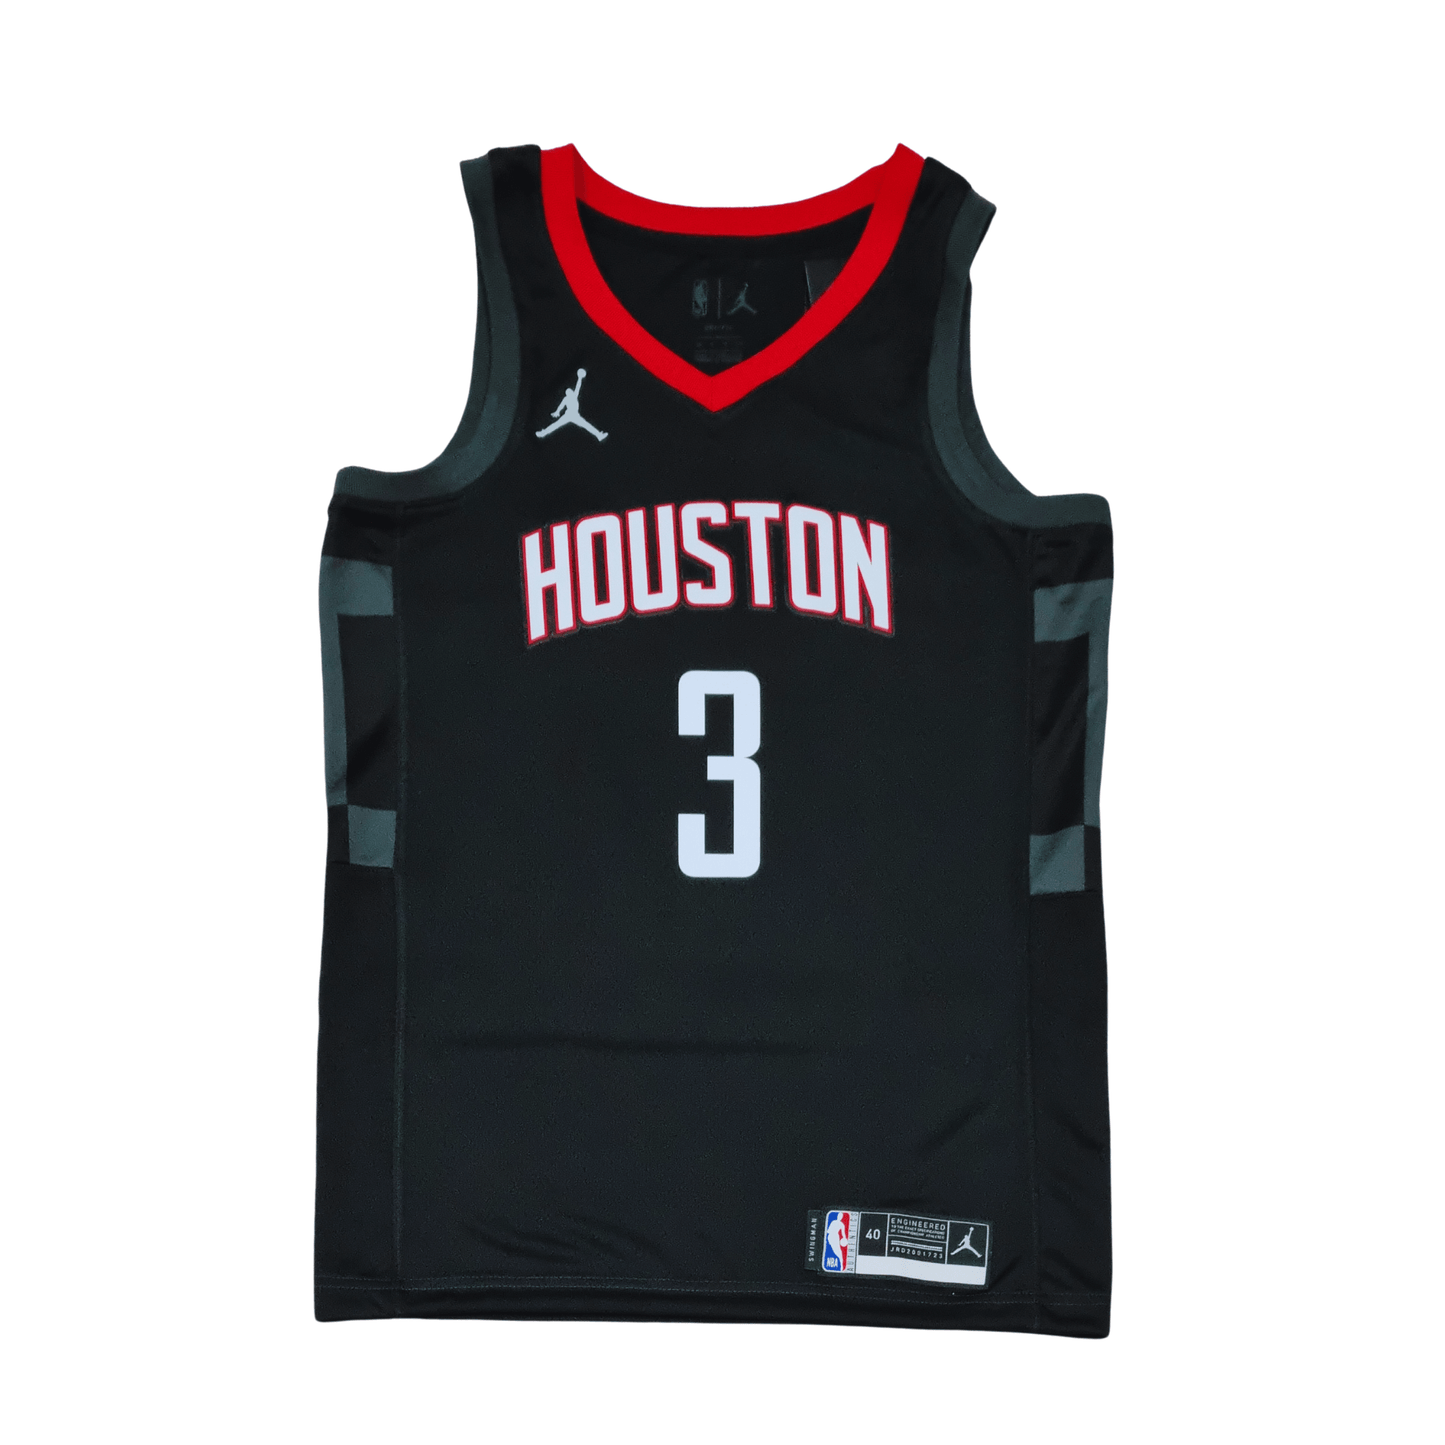 Houston Rockets Swingman Jersey - Front